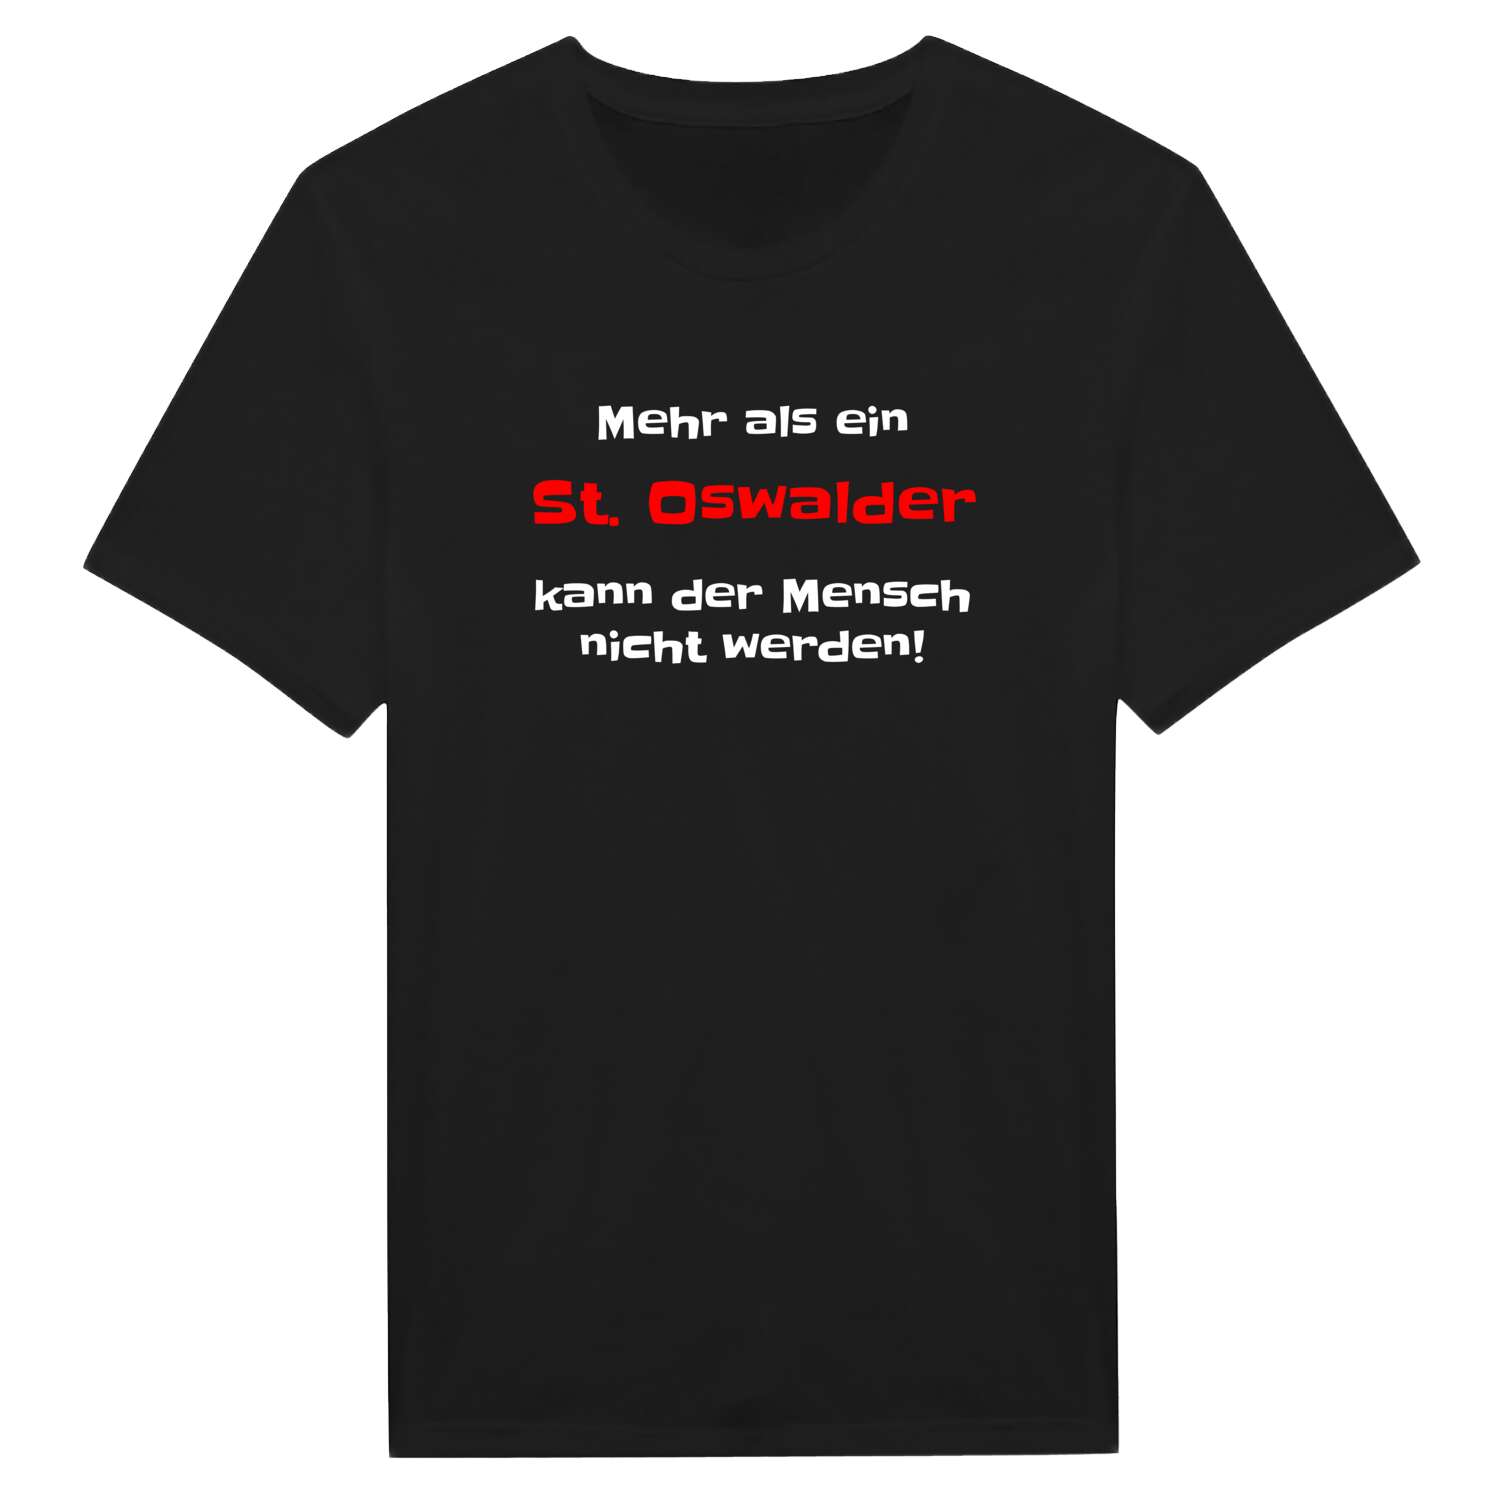 St. Oswald T-Shirt »Mehr als ein«